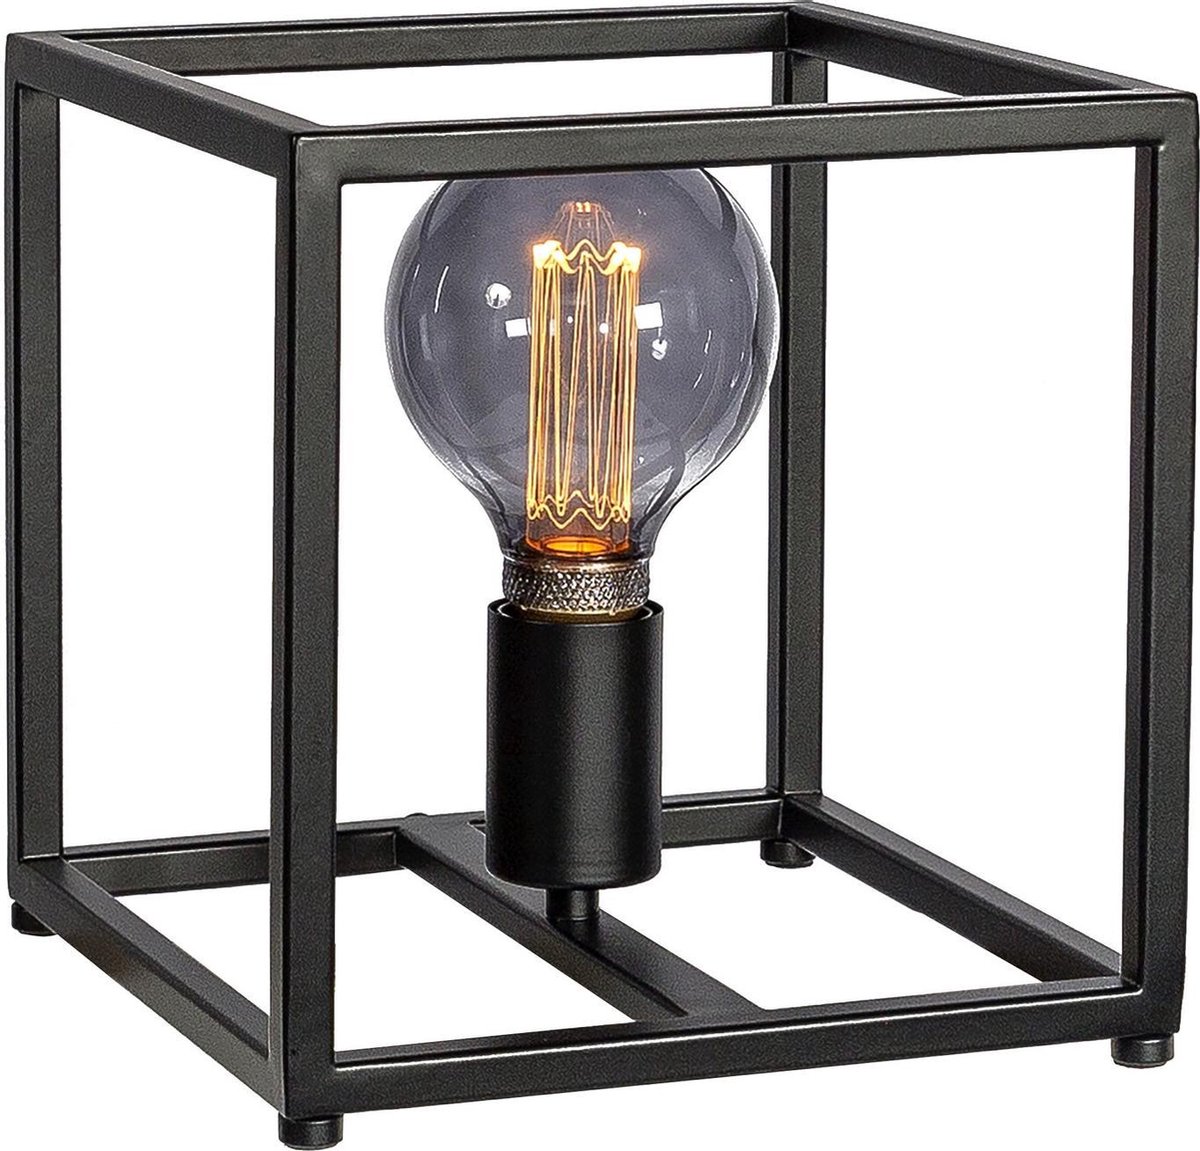 Cage - Tafellamp - small - 22cm - stalen frame - zwart - 1-lichts